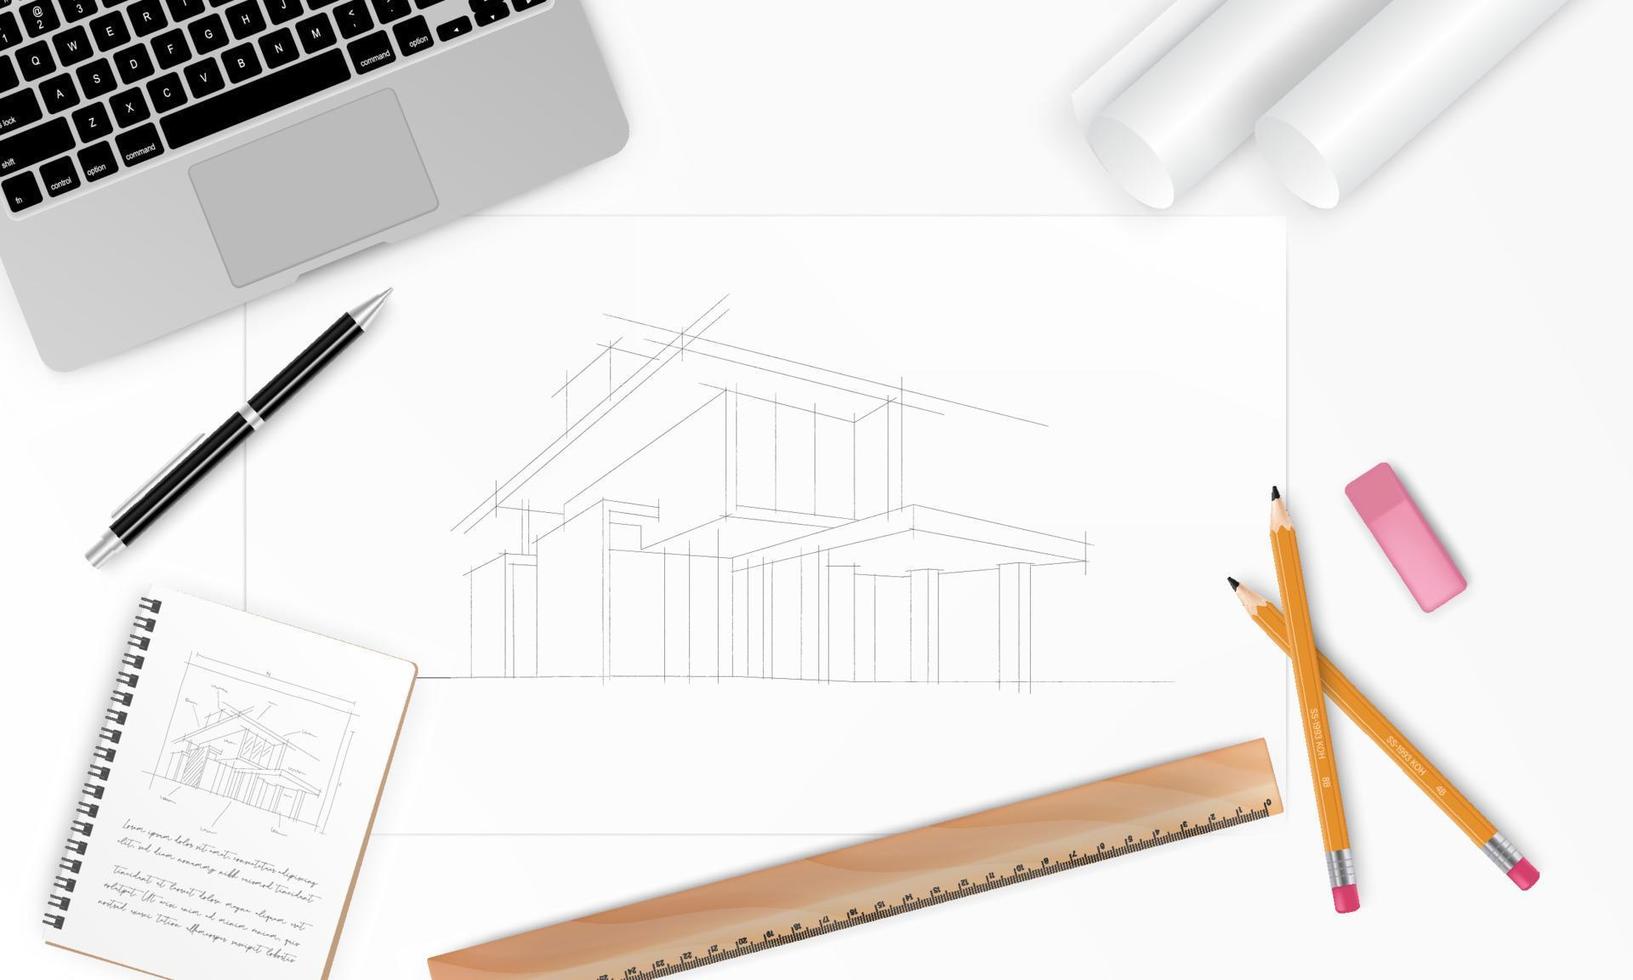 local de trabalho - plano de casa de arquiteto de projeto de construção com ferramentas, laptop e notebook. fundo de construção. ilustração vetorial vetor